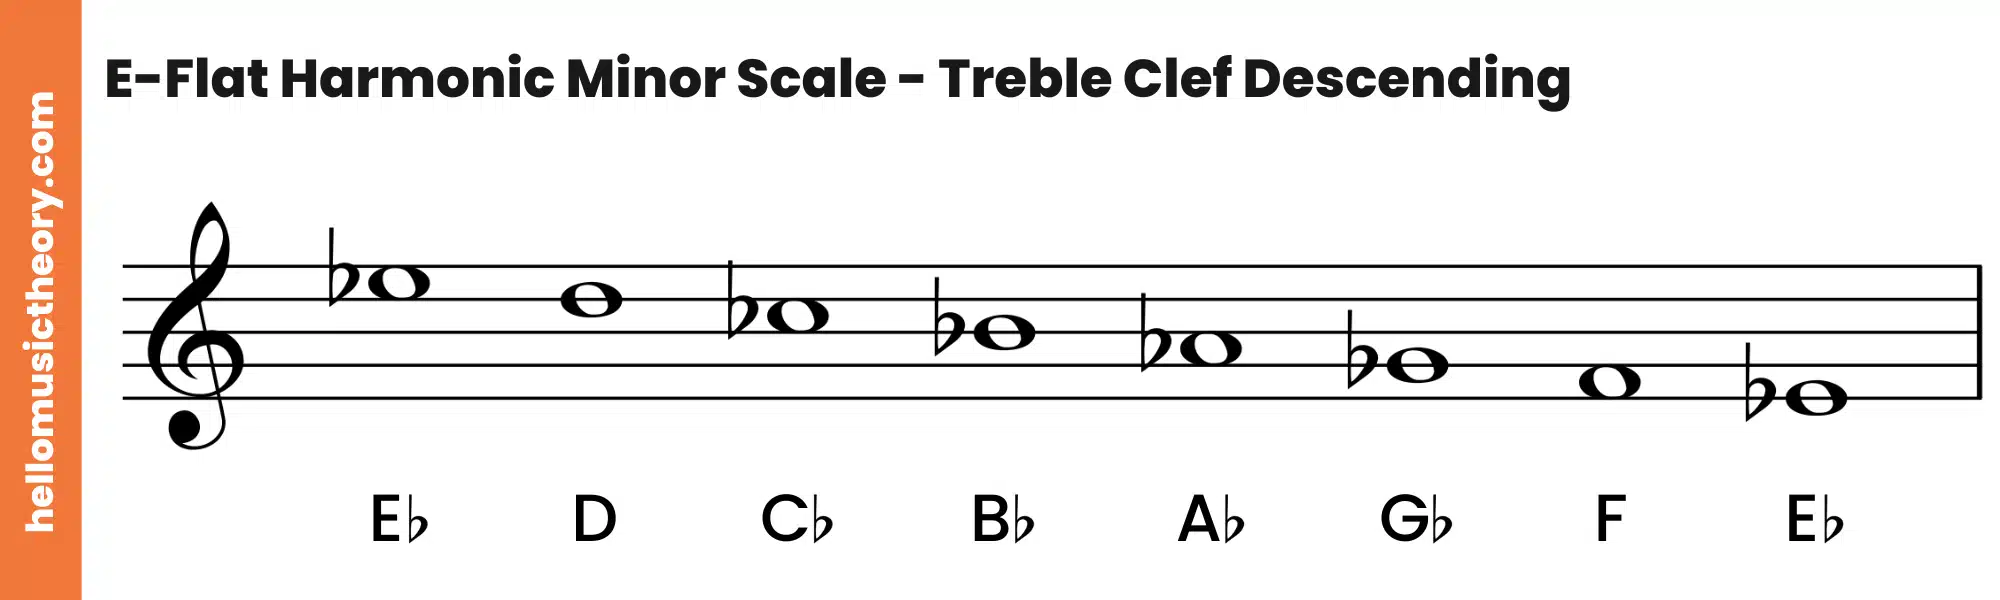 E-Flat Harmonic Minor Scale Treble Clef Descending